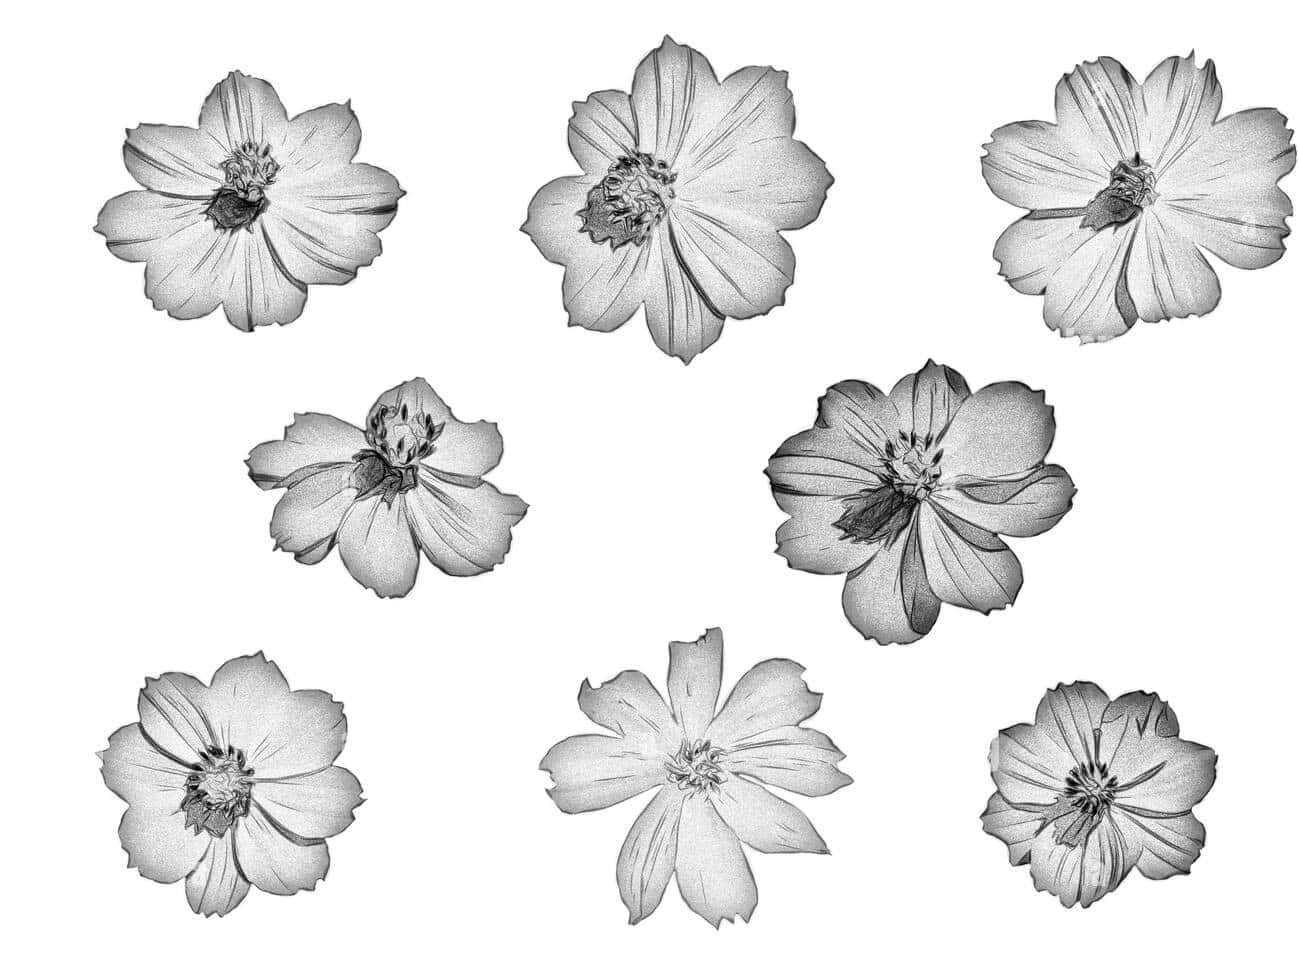 Ensvartvit Teckning Av Blommor